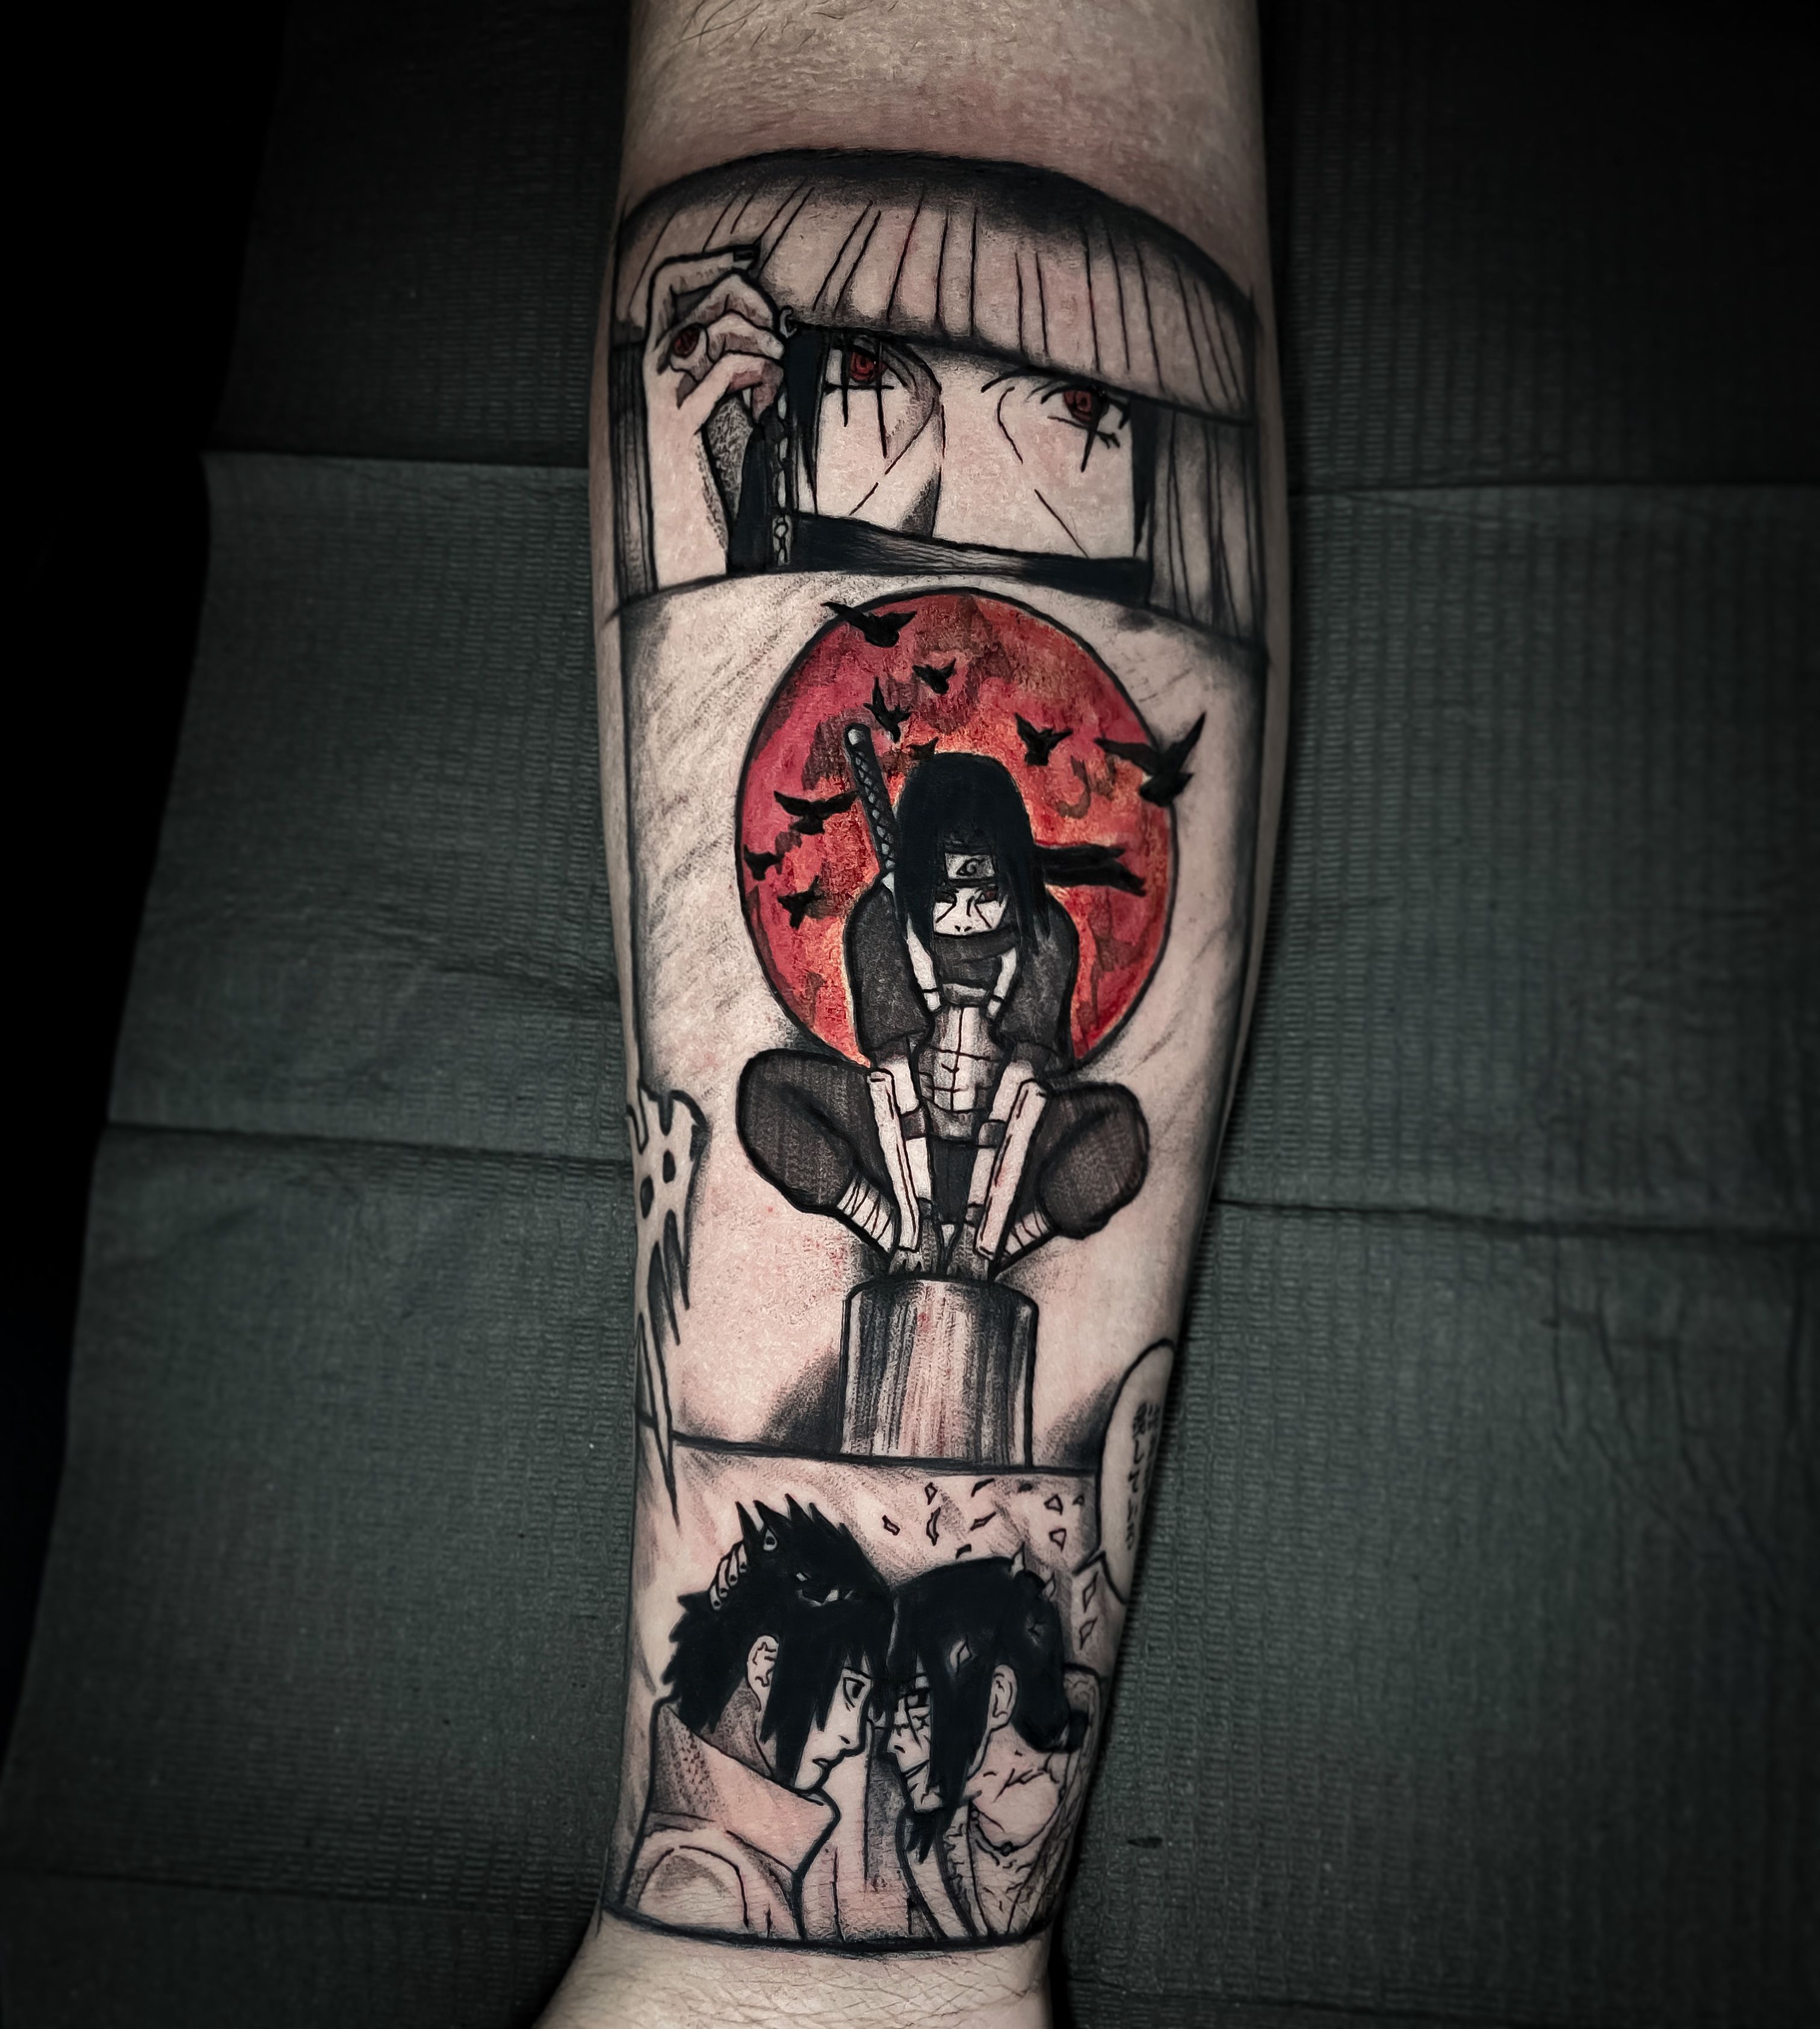 Tattoo artist 𝐒𝐚𝐝𝐤𝐧𝐢𝐠𝐡𝐭  Воронеж Russia  iNKPPL